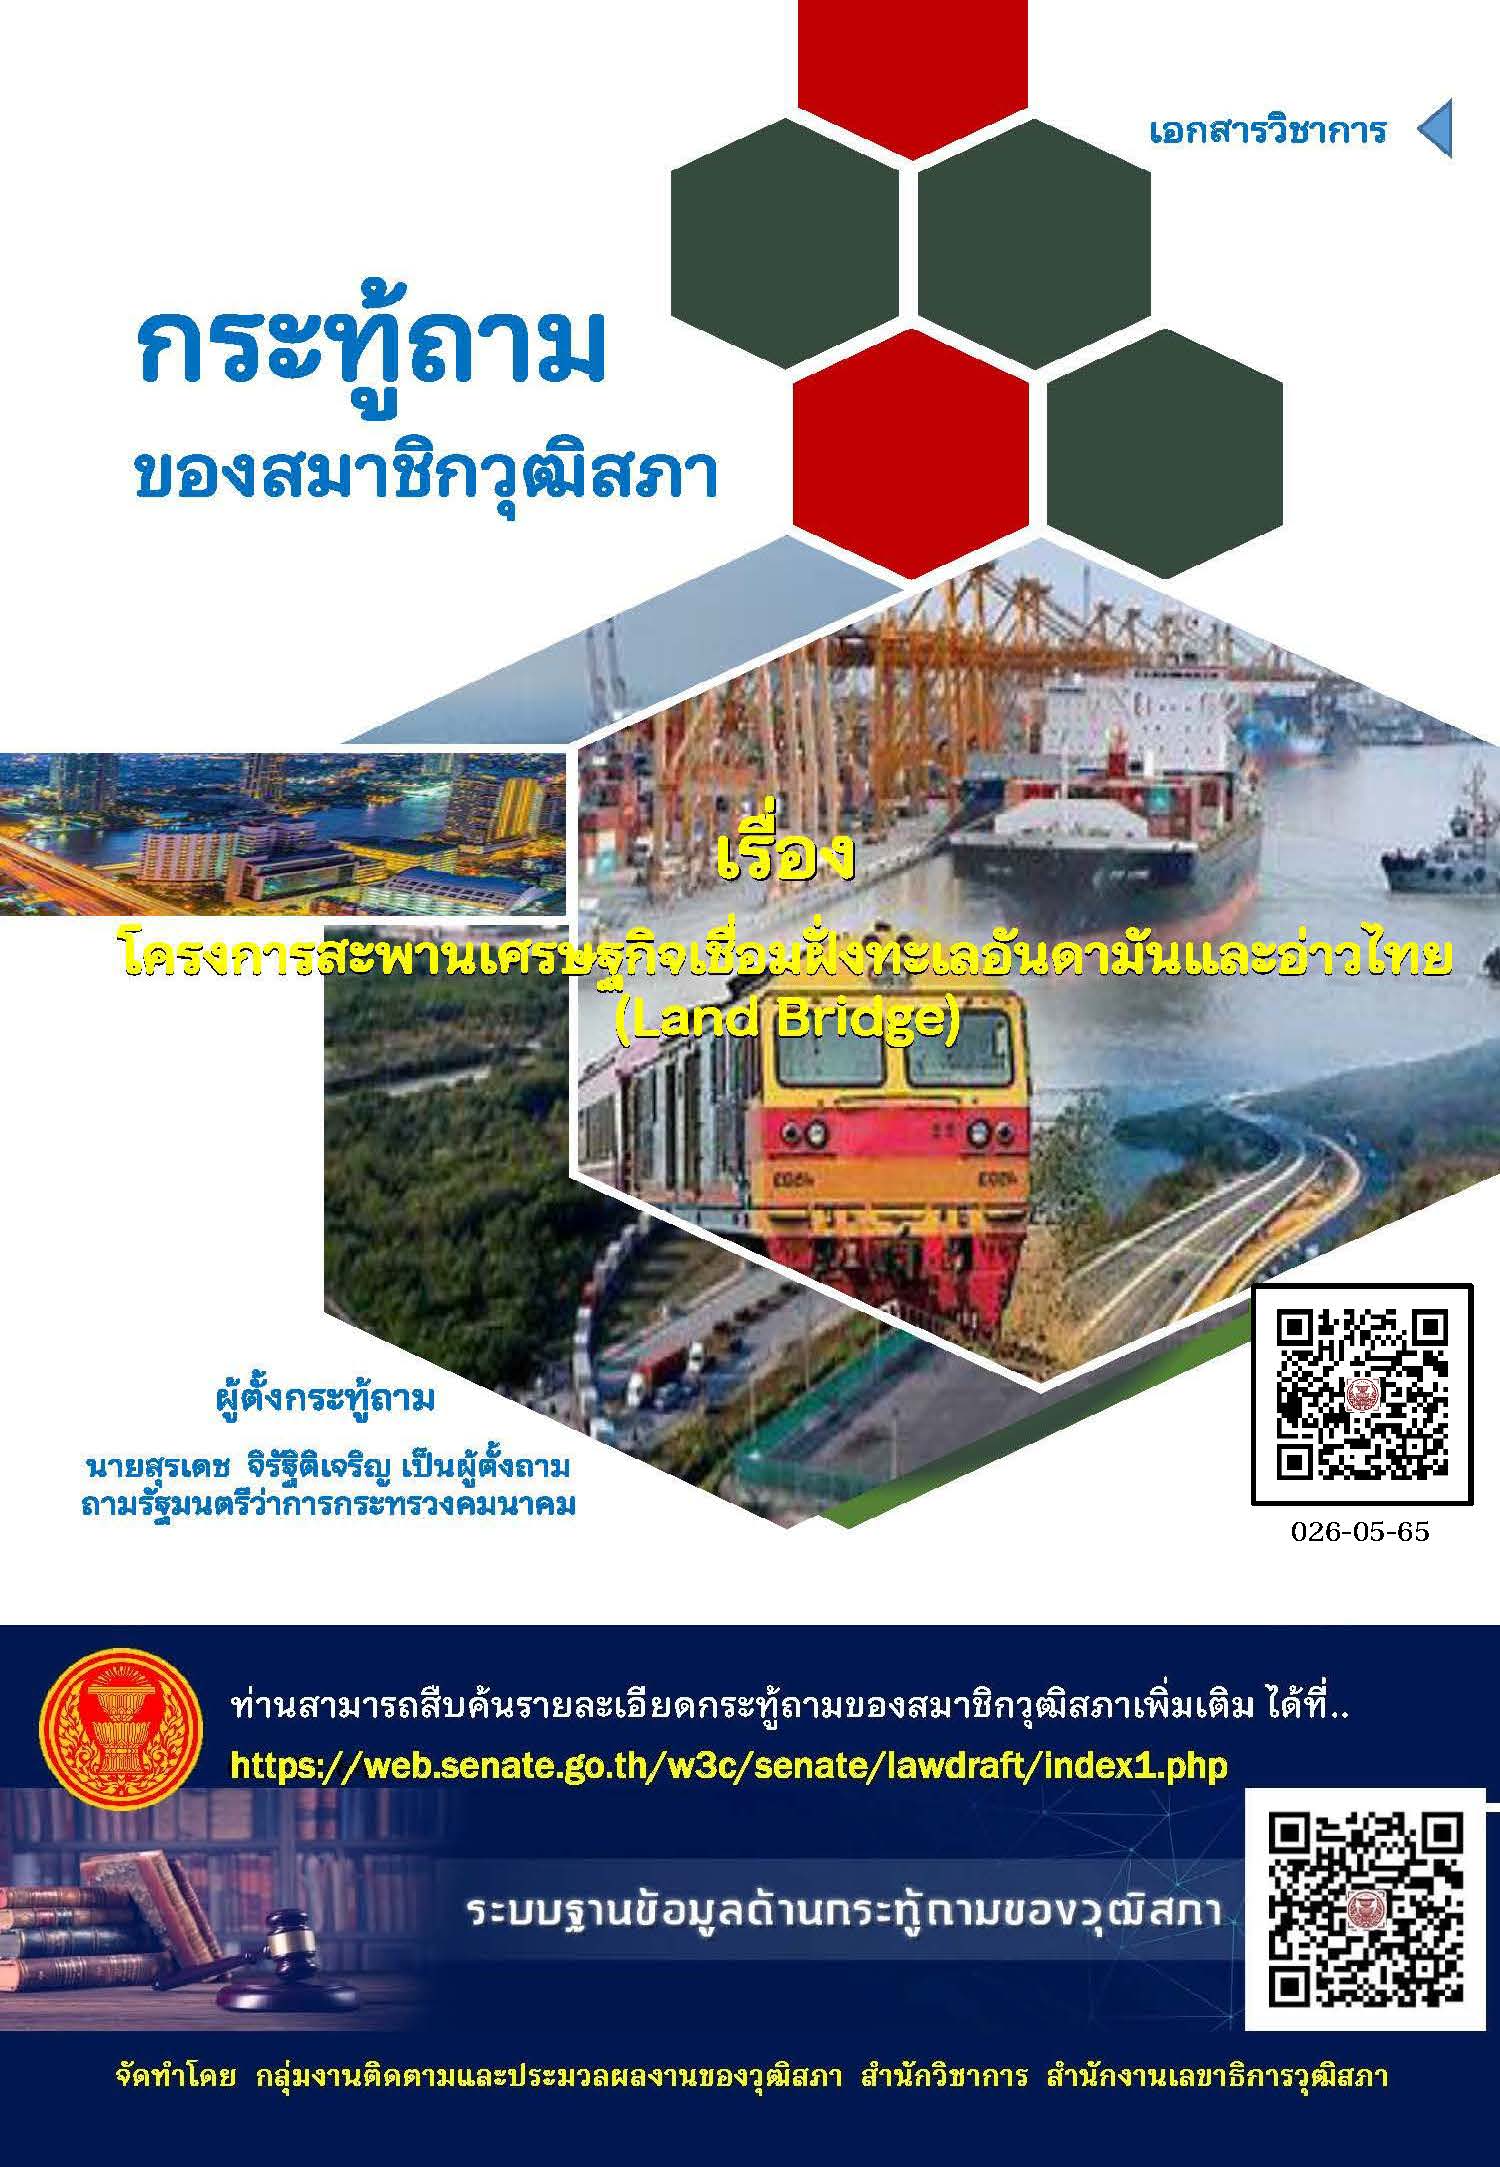 โครงการสะพานเศรษฐกิจเชื่อมฝั่งทะเลอันดามันและอ่าวไทย (Land Bridge)